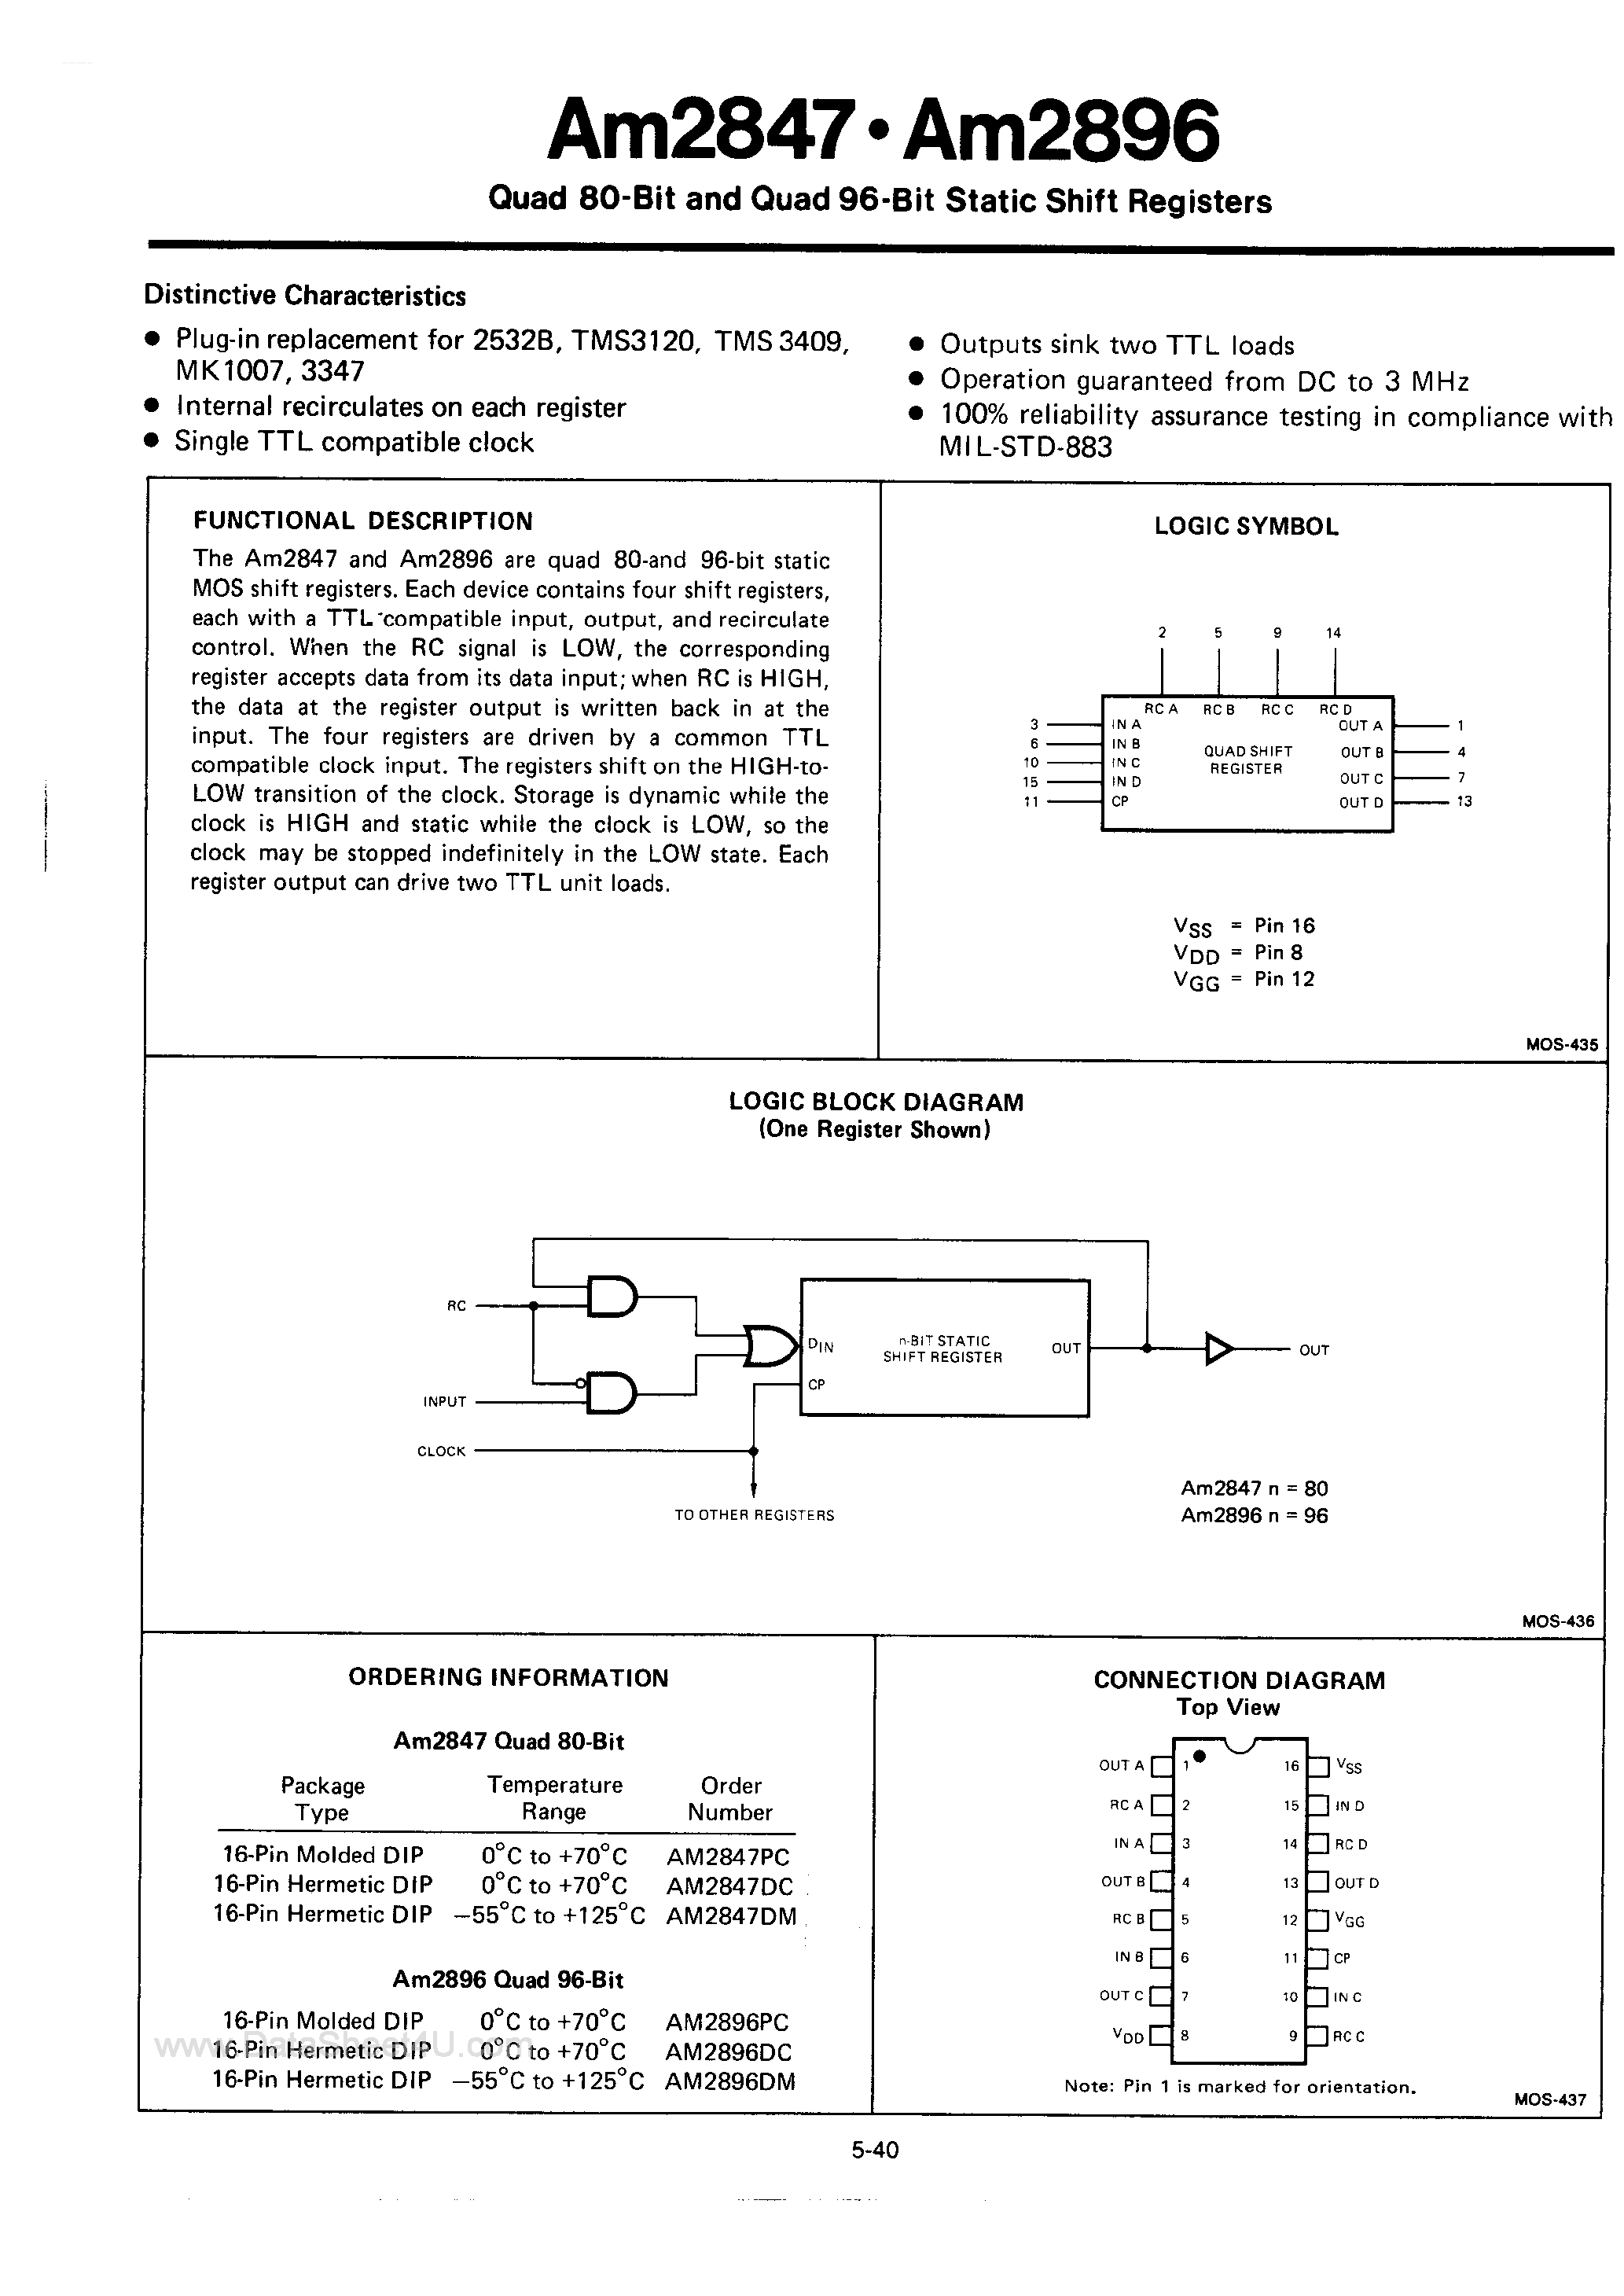 Даташит AM2847 - (AM2847 / AM2896) Quad 80-Bit and Quad 96-Bit Static Shift Registers страница 1